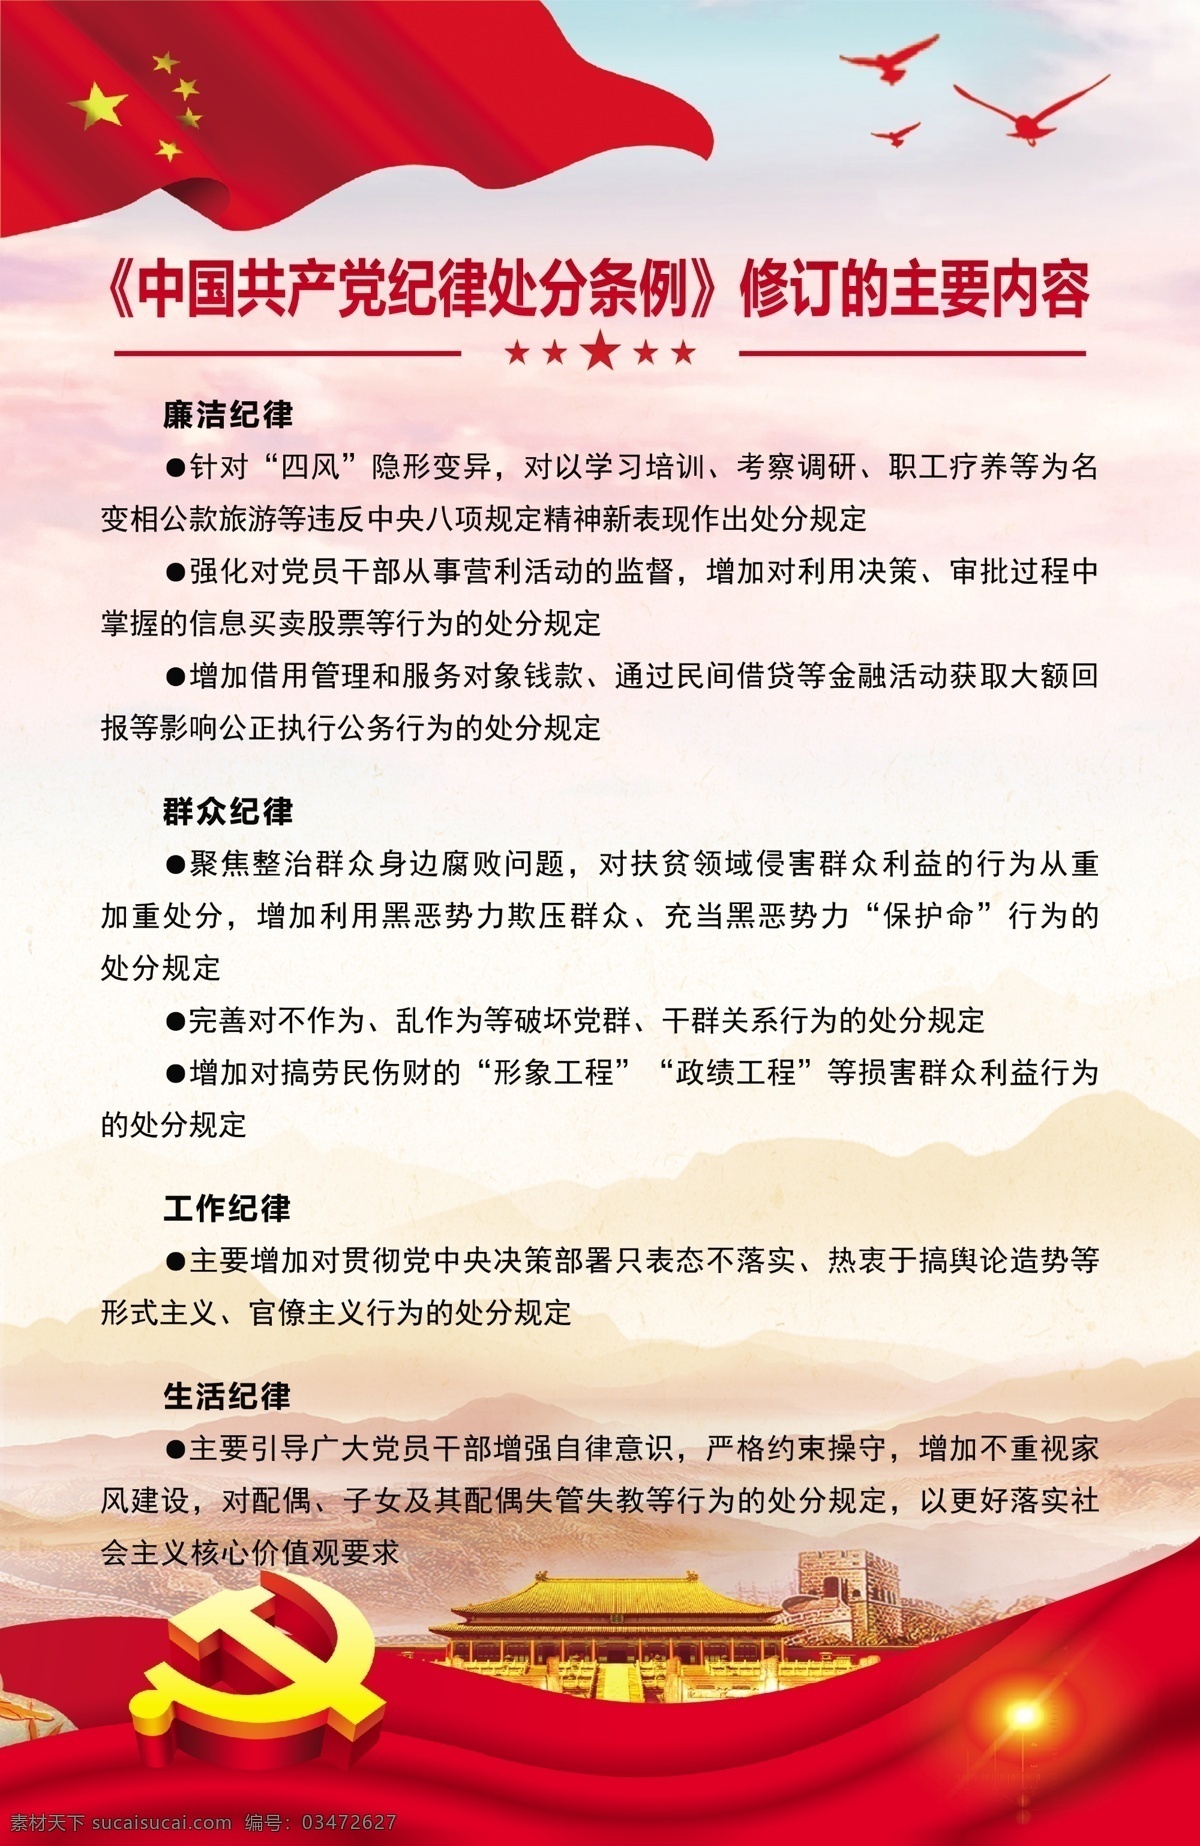 中国共产党 纪律 处分 修订 内容 纪律处分 修订内容 廉洁纪律 群众纪律 生活纪律 分层